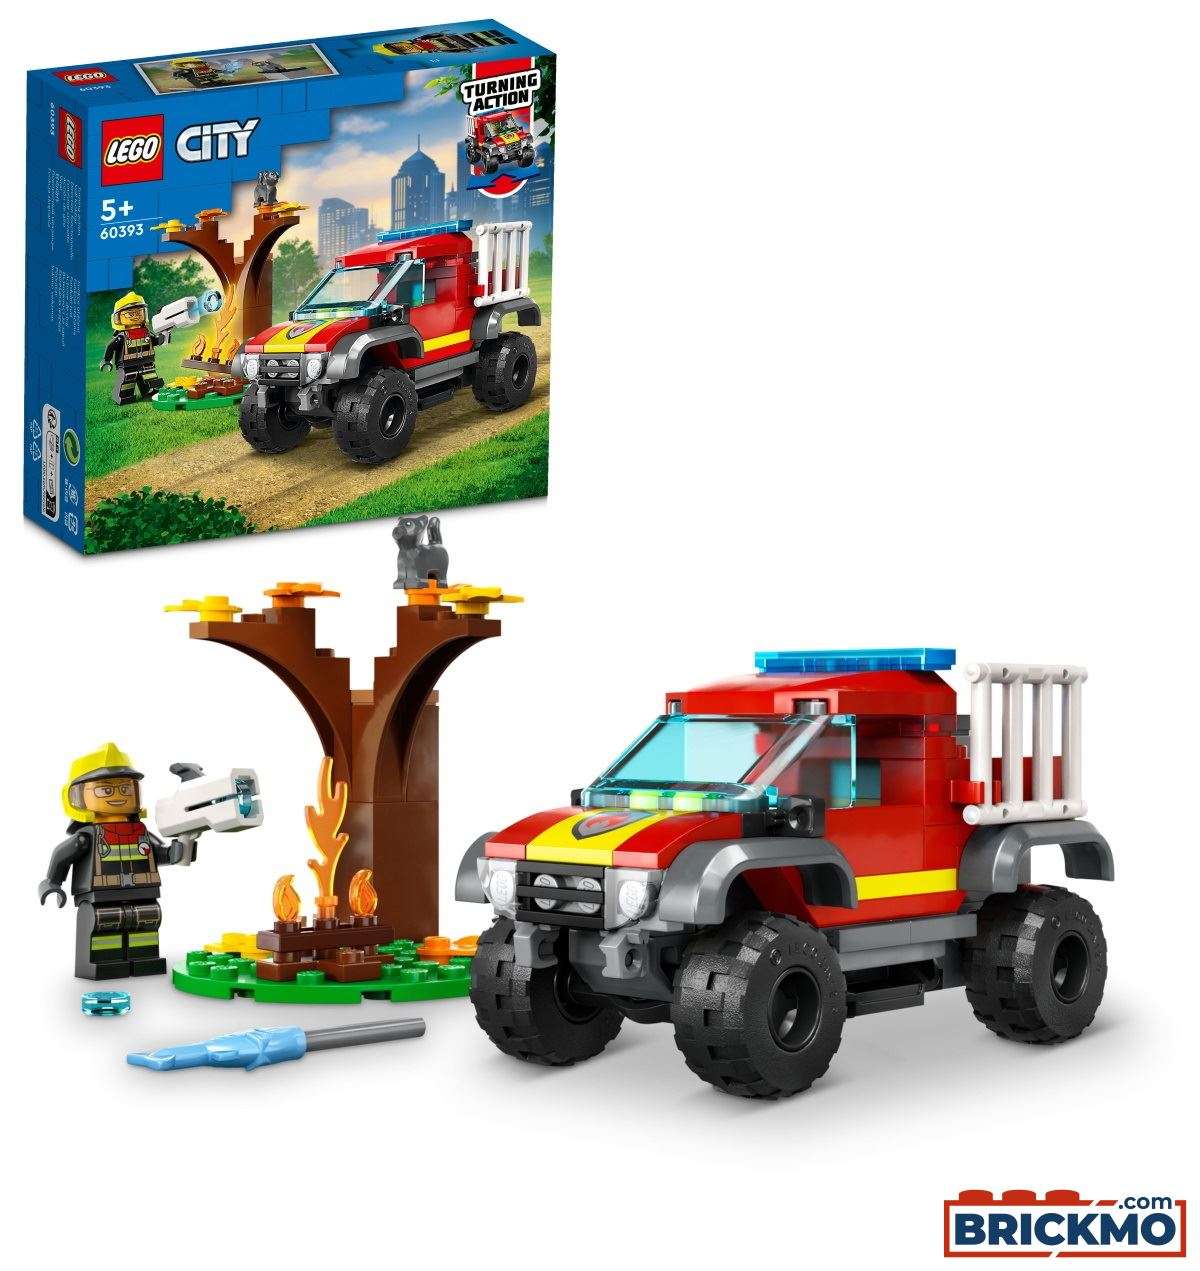 LEGO City 60393 Feuerwehr-Pickup 60393